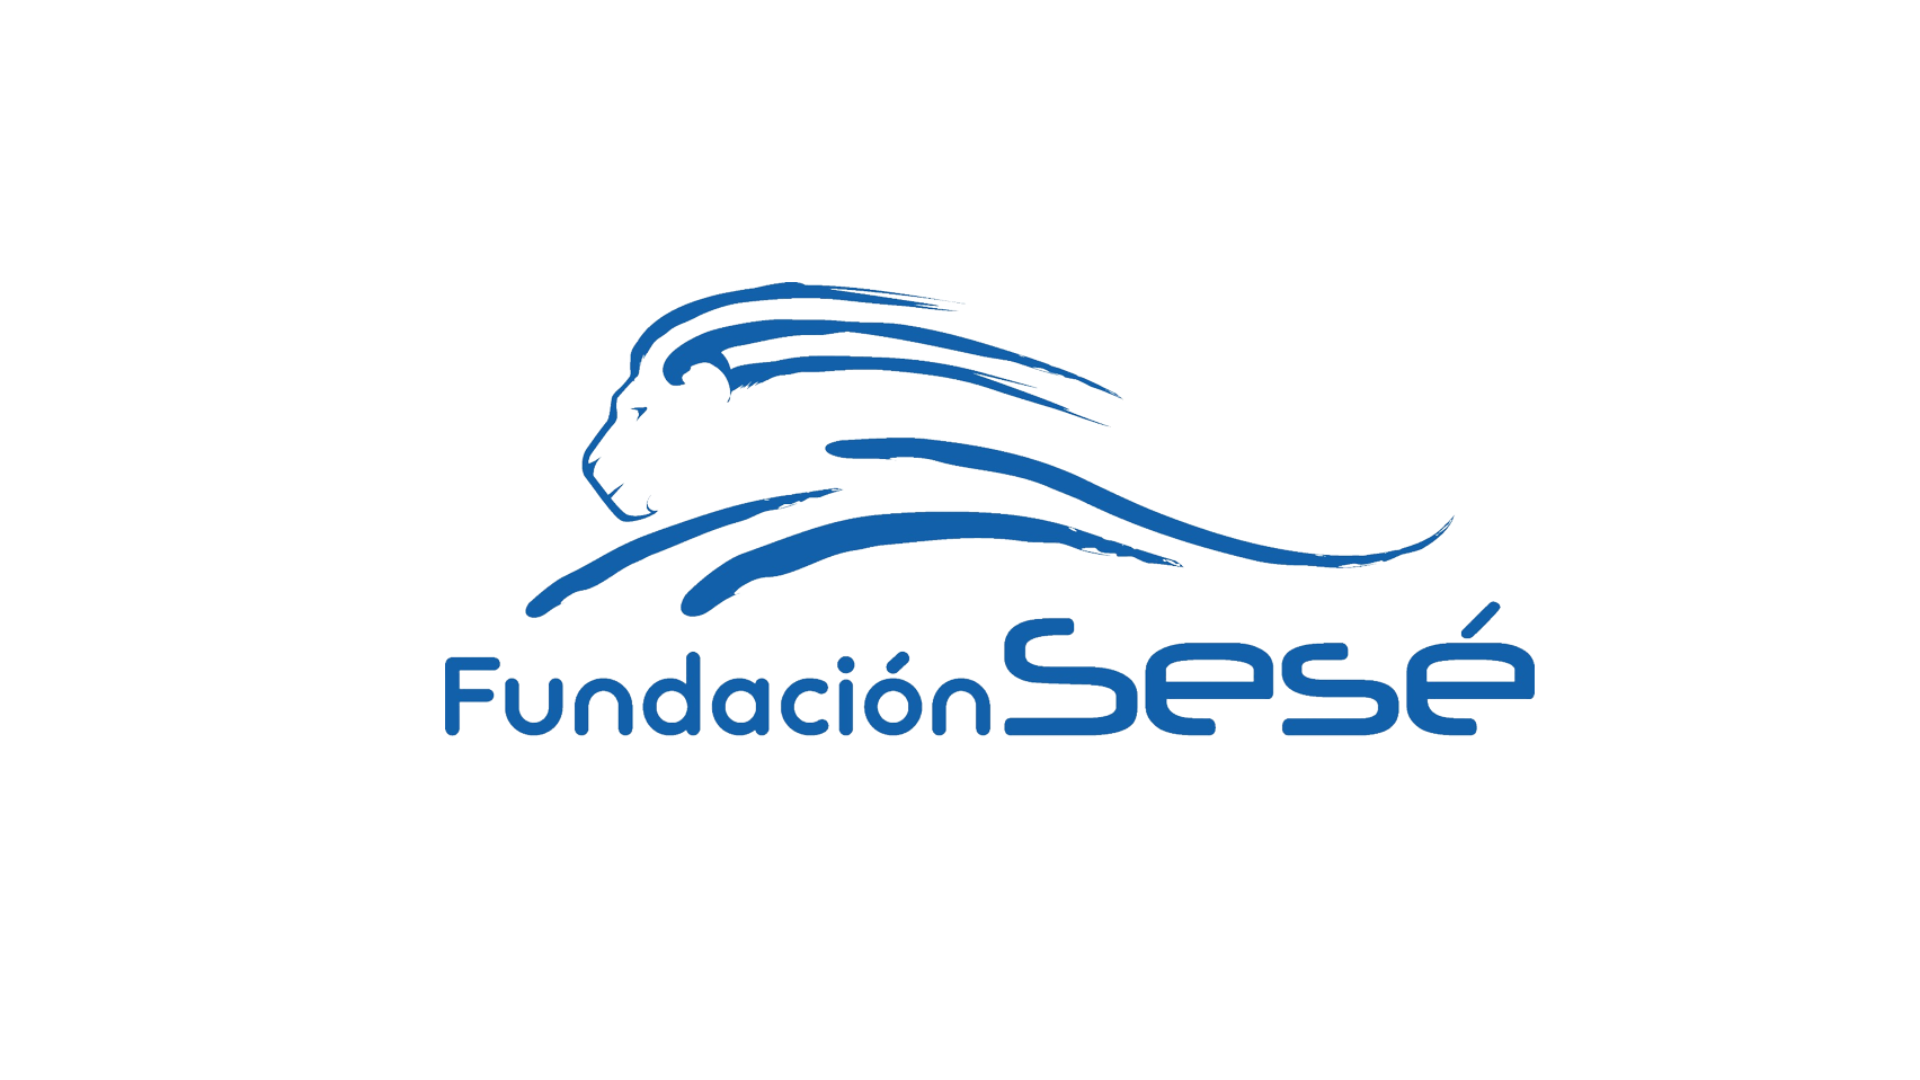 Fundación SESÉ